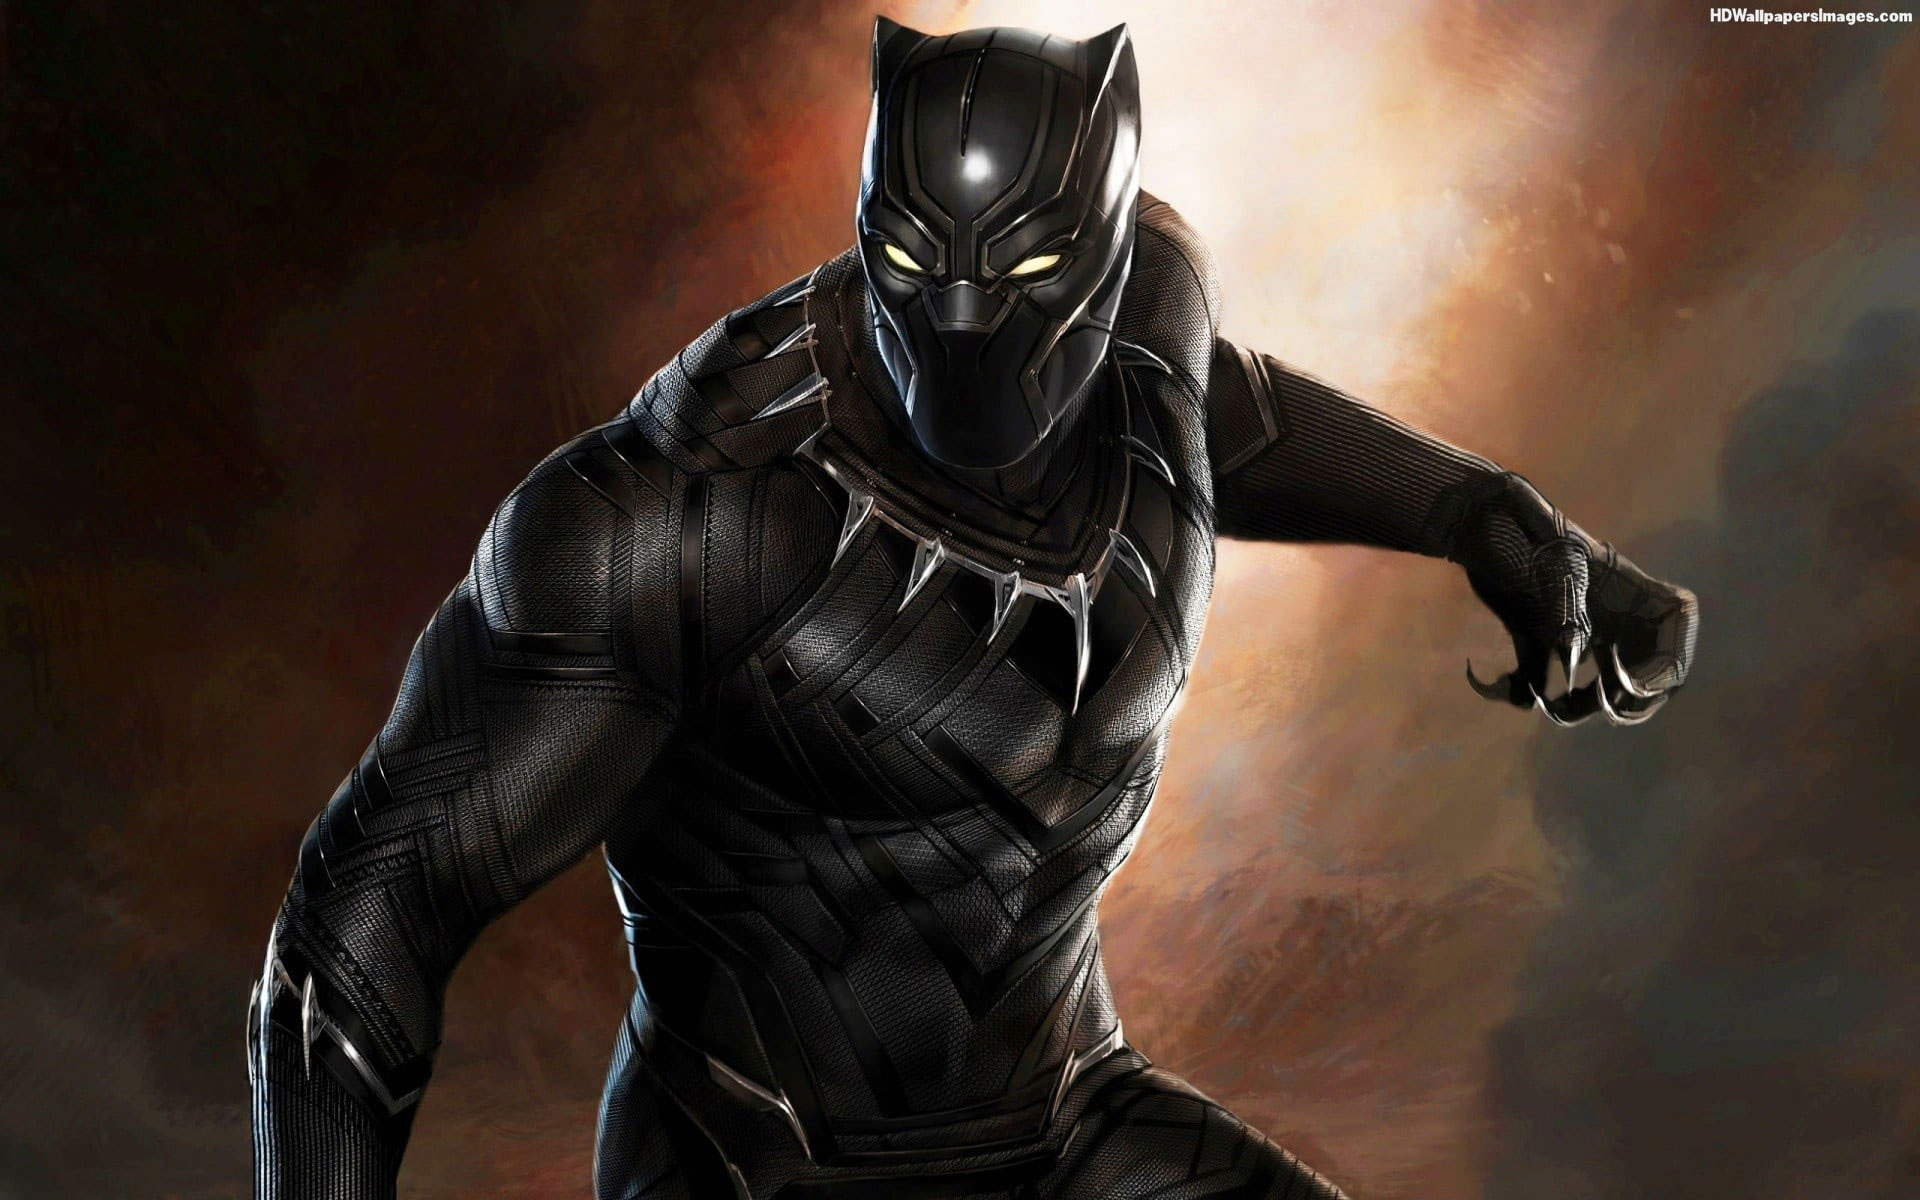 Marvel Black Panther digital wallpaper, Marvel Cinematic Universe